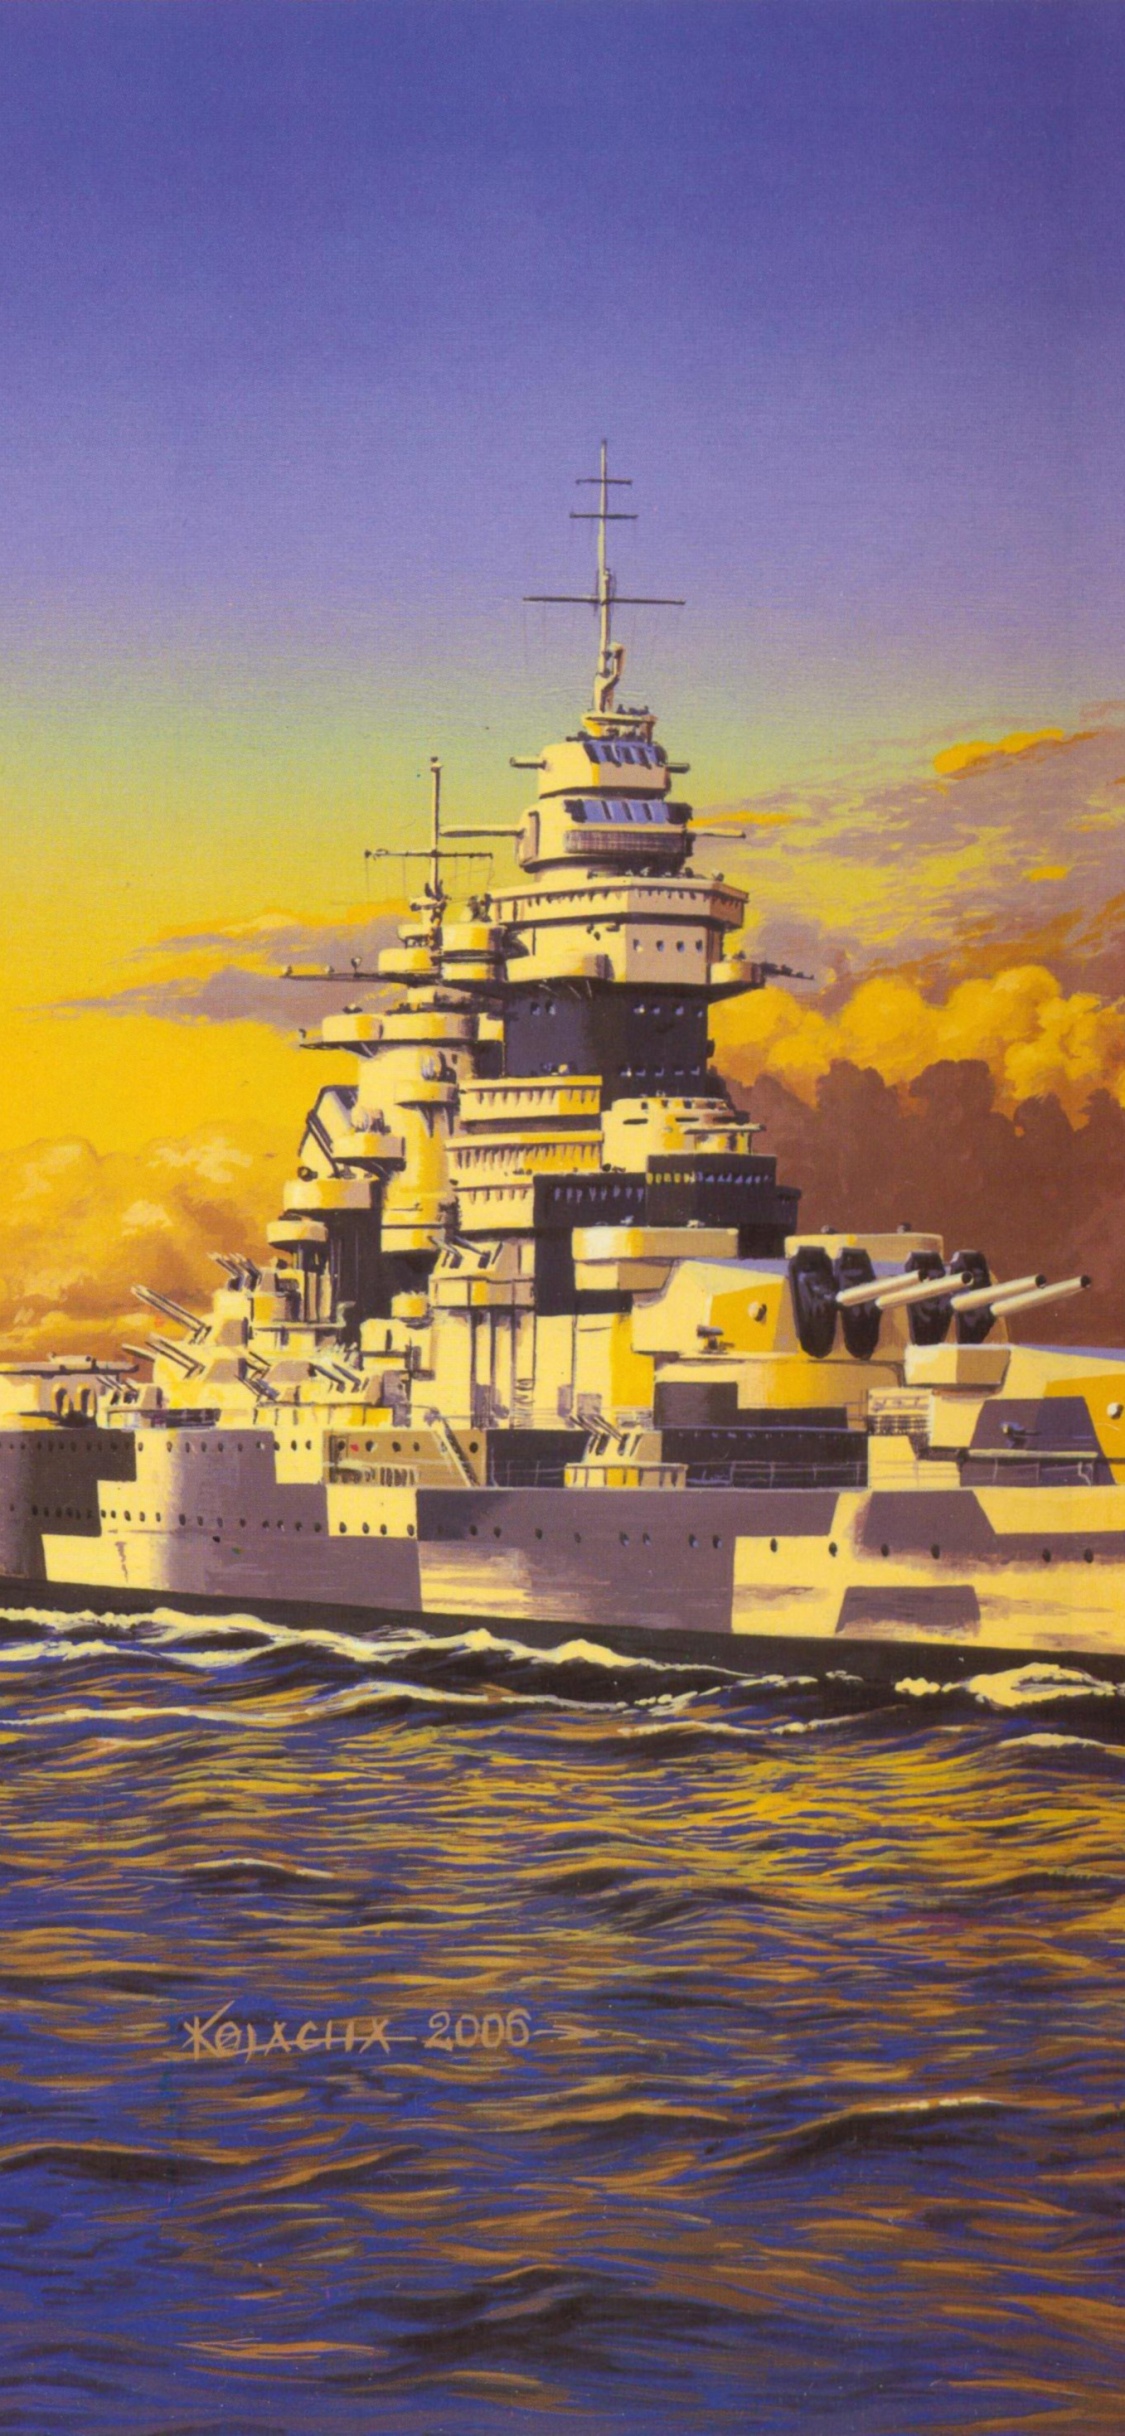 日本大和战舰, 战舰, 军舰, 艺术, 海军的船 壁纸 1125x2436 允许